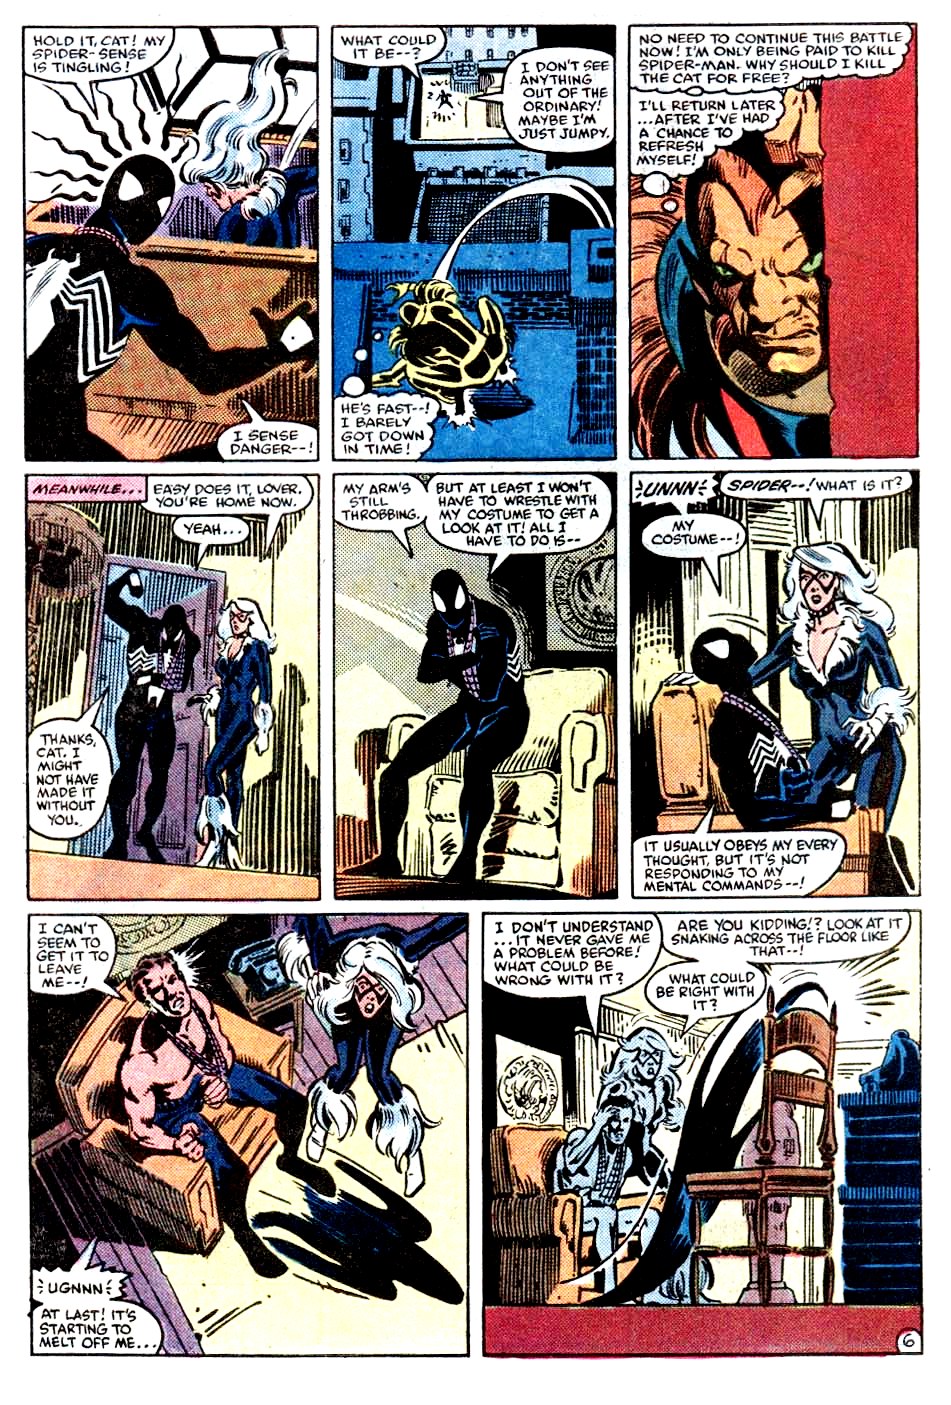 Read online Spider-Man: Birth of Venom comic -  Issue # TPB - 54